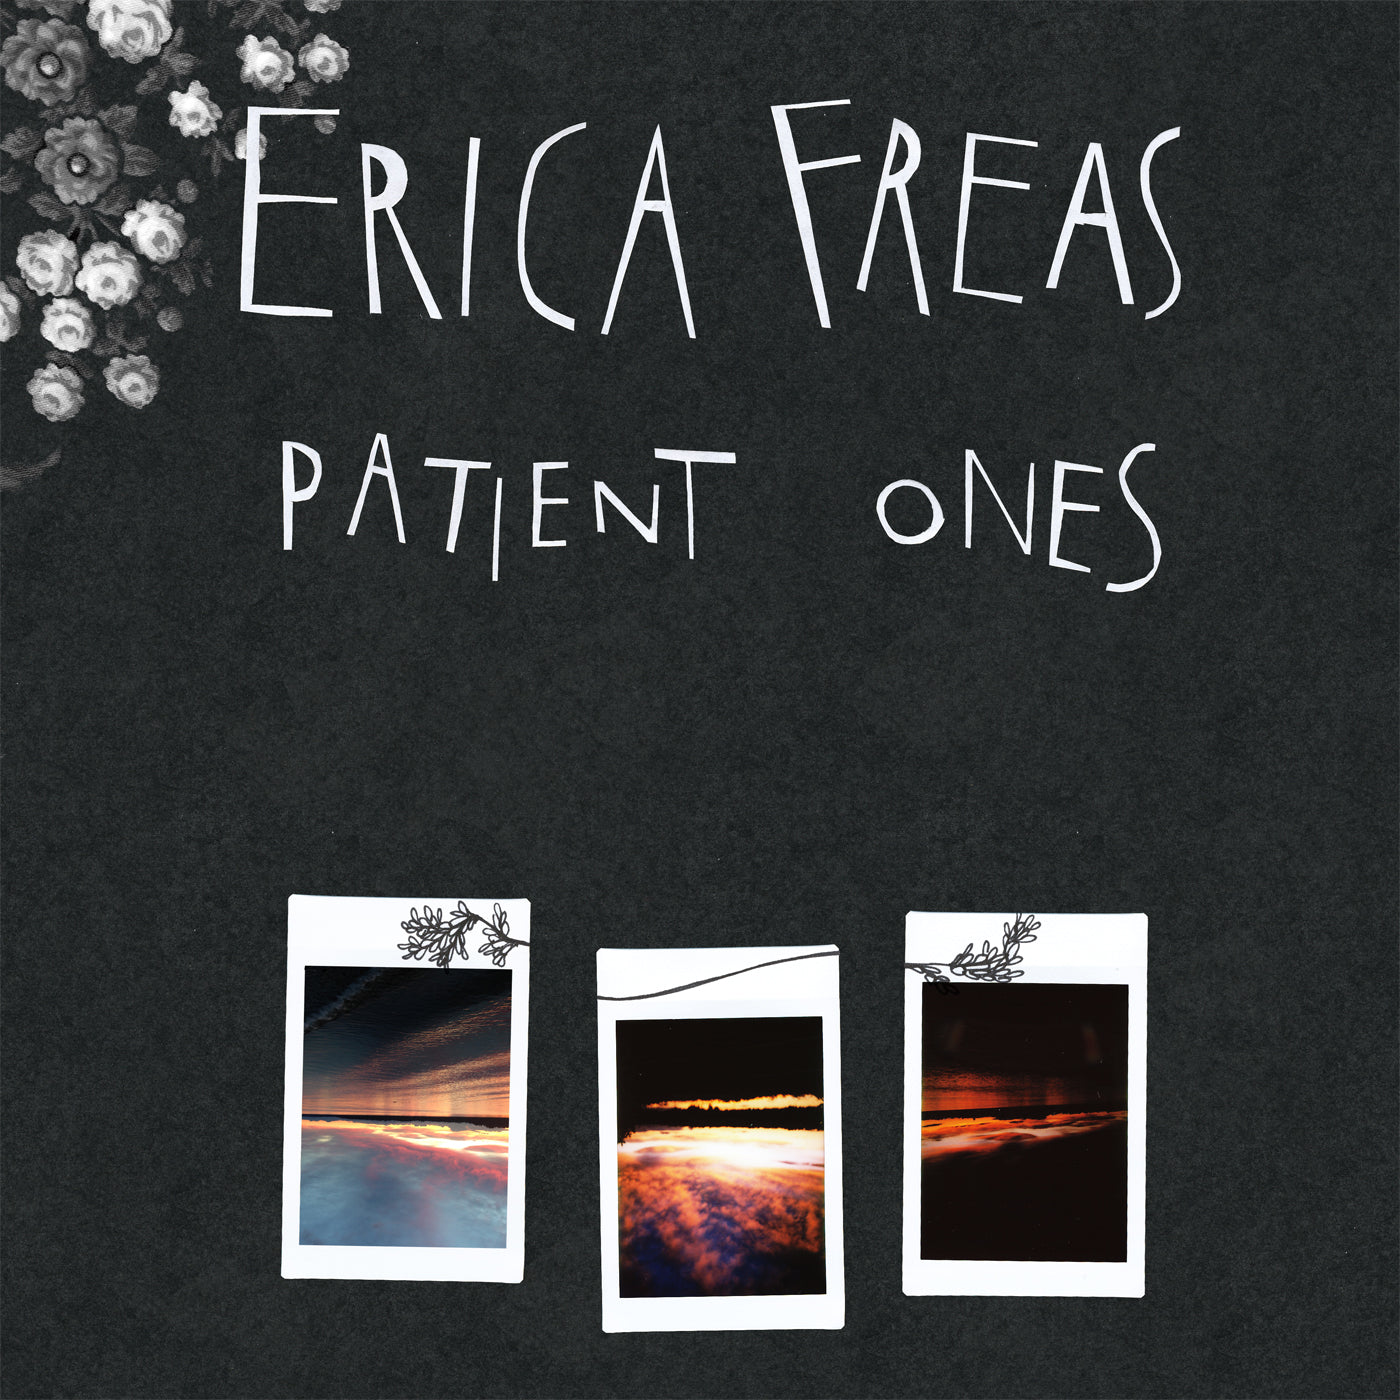 Erica Freas "Patient Ones" CD